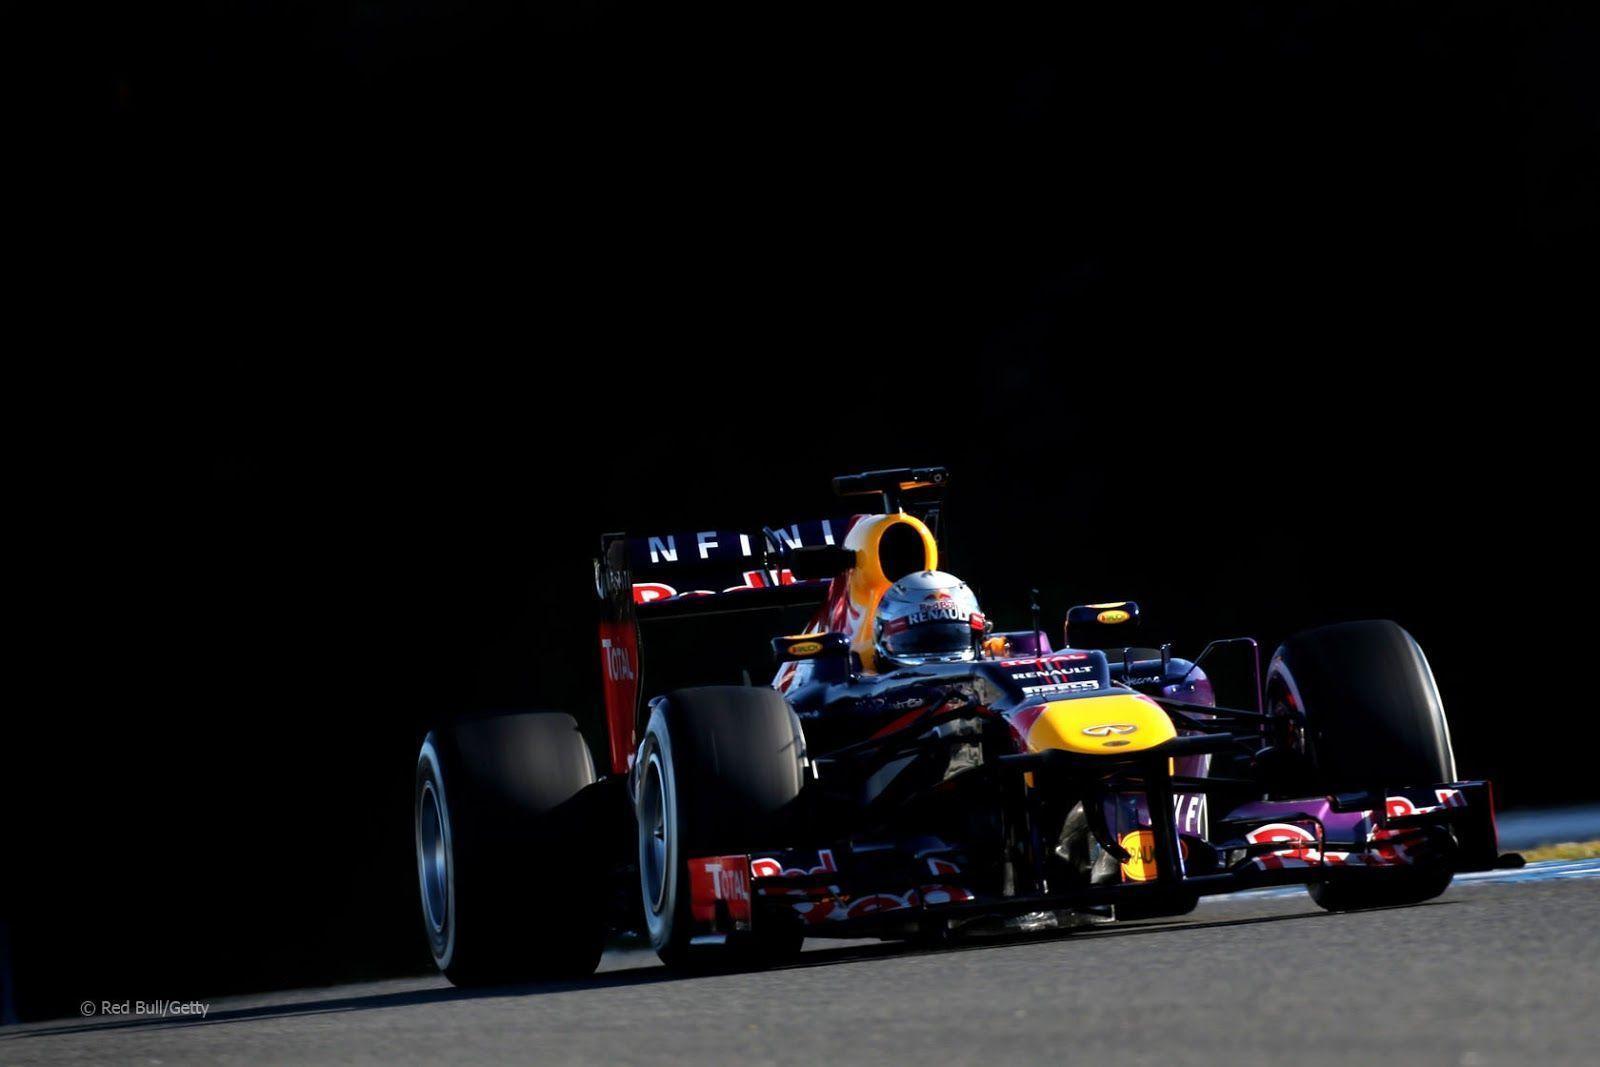 Red Bull RB9 2013 F1 Wallpaper